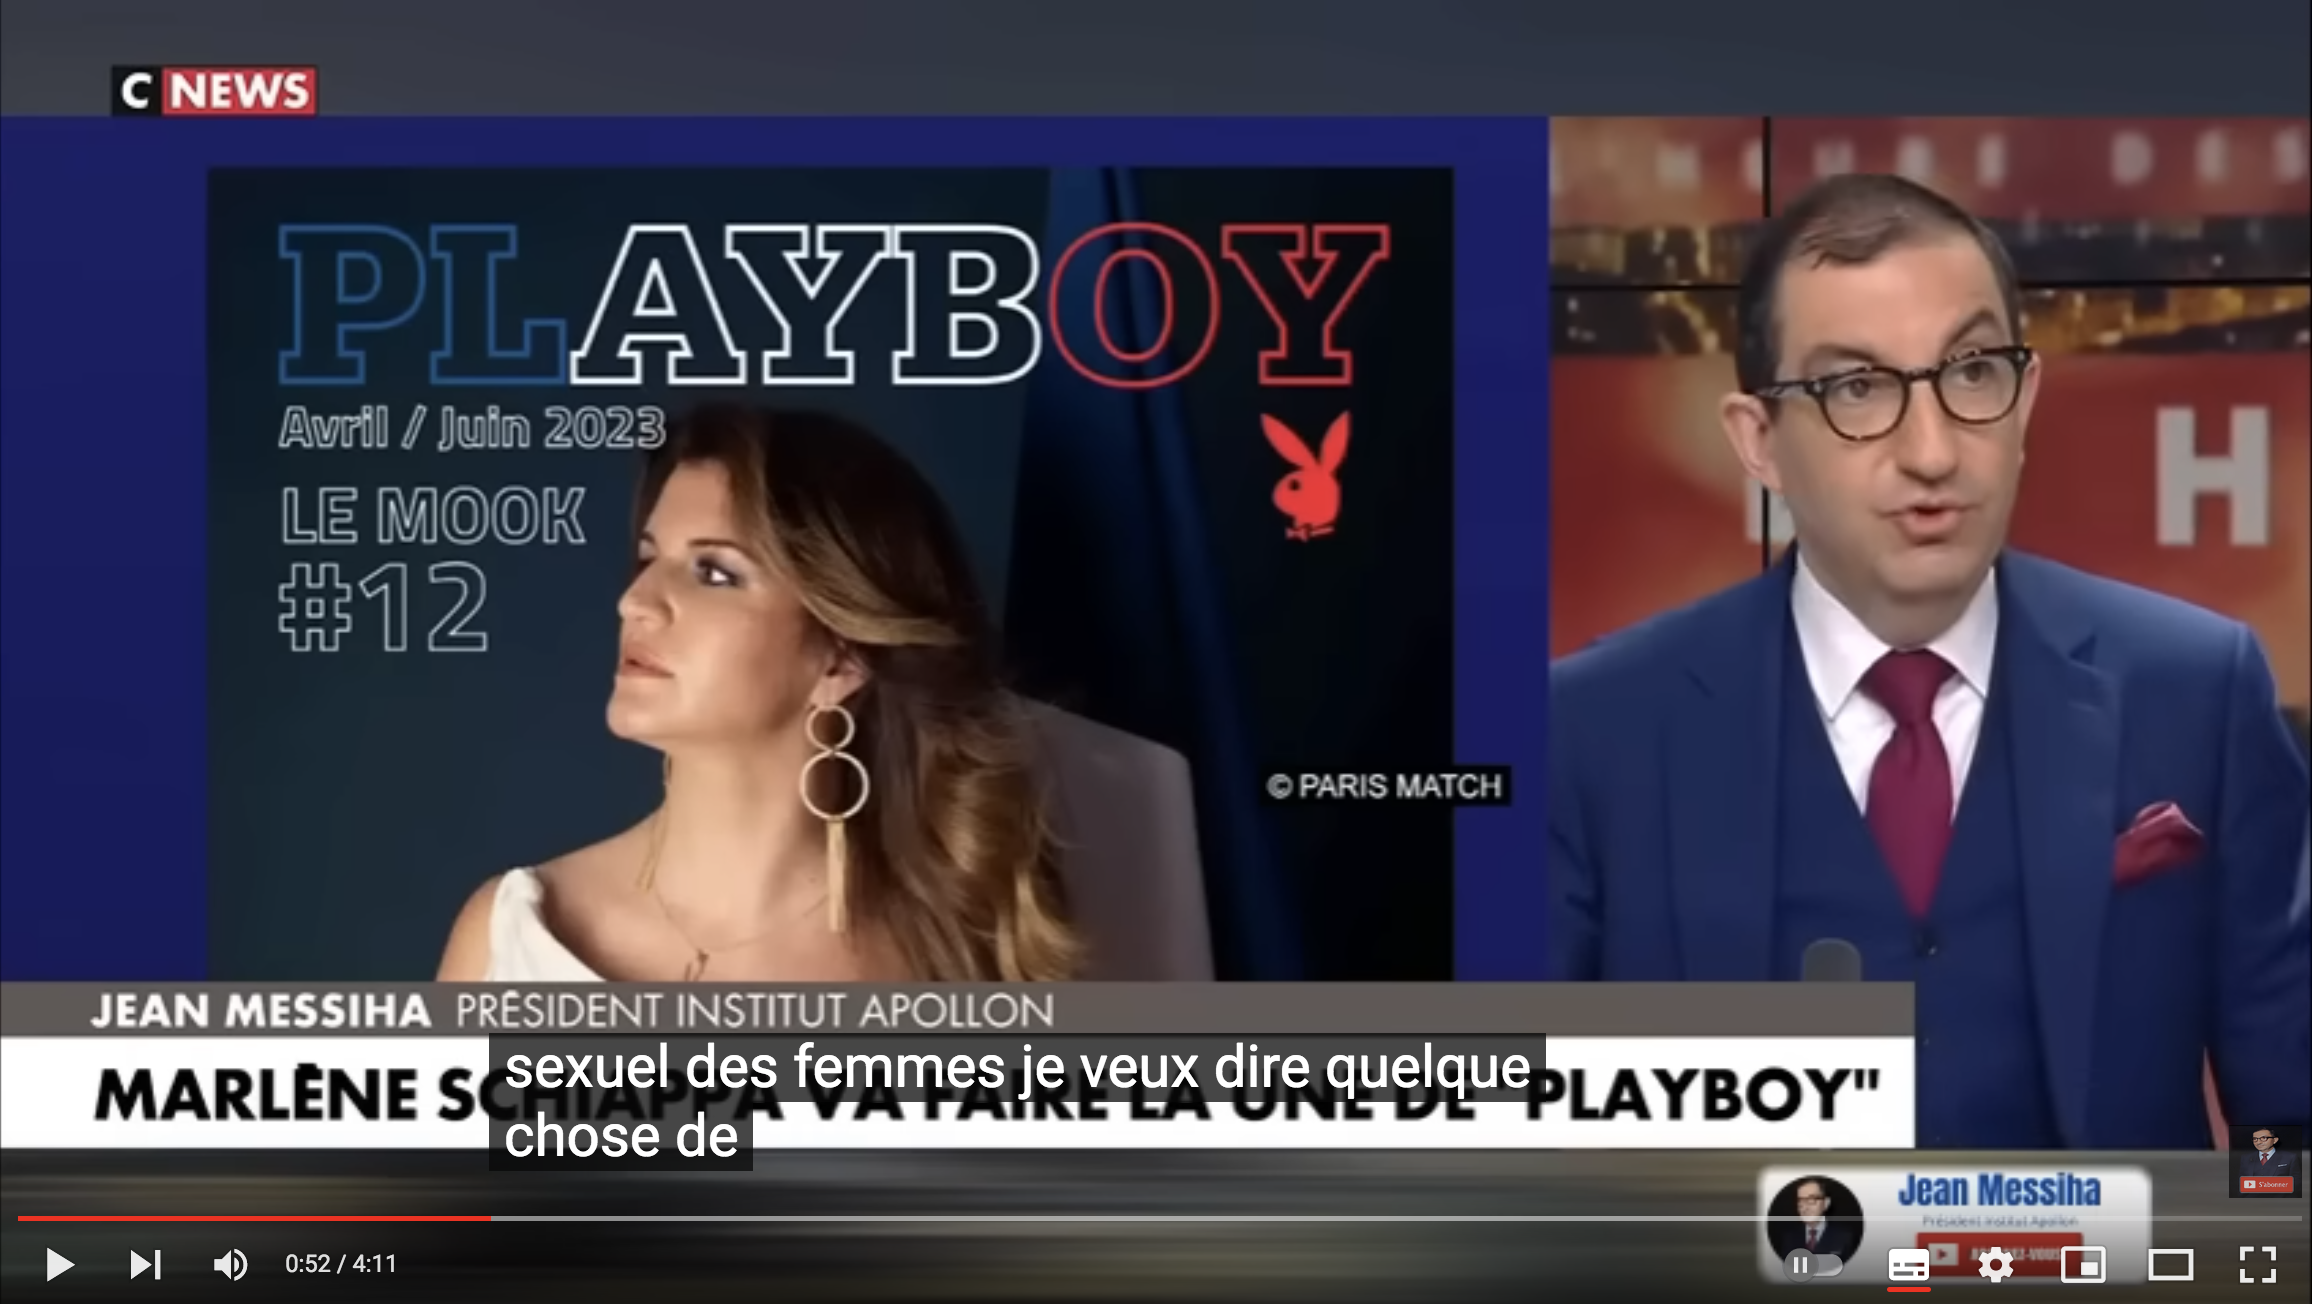 Jean Messiha à propos de Marlène Schiappa dans “Playboy” : “C’est incohérent en plus d’être pathétique !” (VIDÉO)